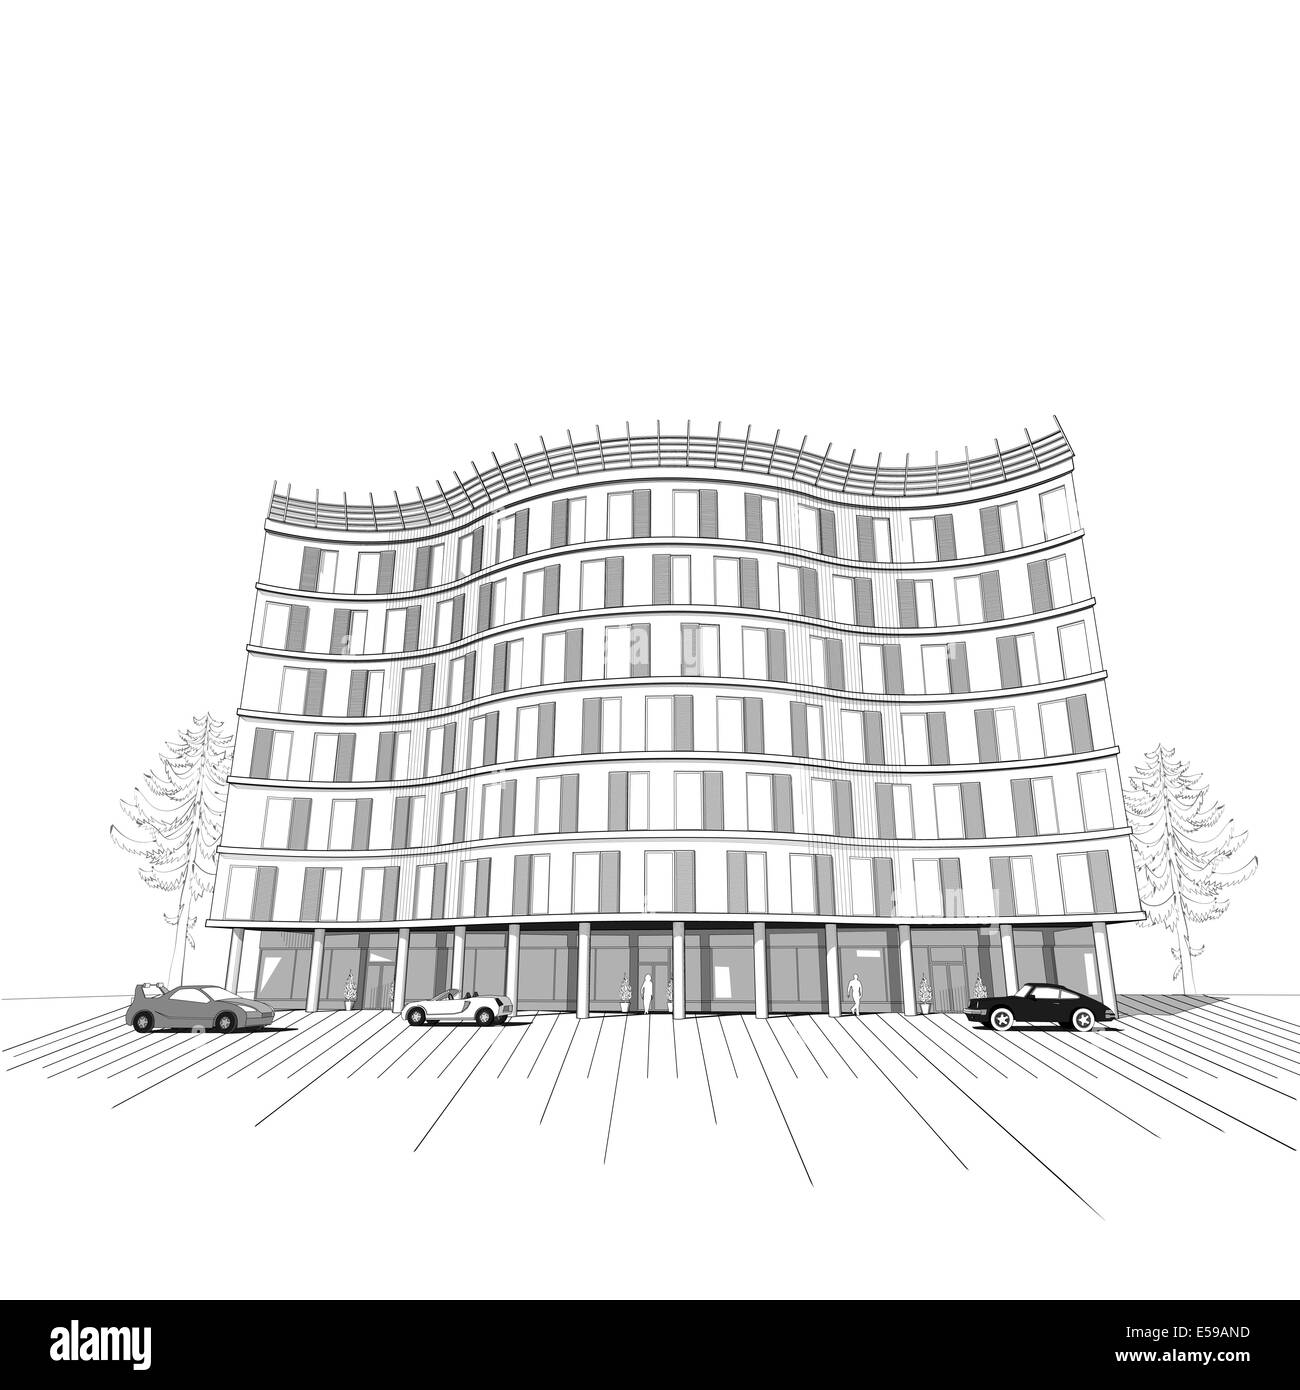 Fond noir et blanc d'architecture moderne avec des vacances ou bureau immeuble de plusieurs étages Banque D'Images